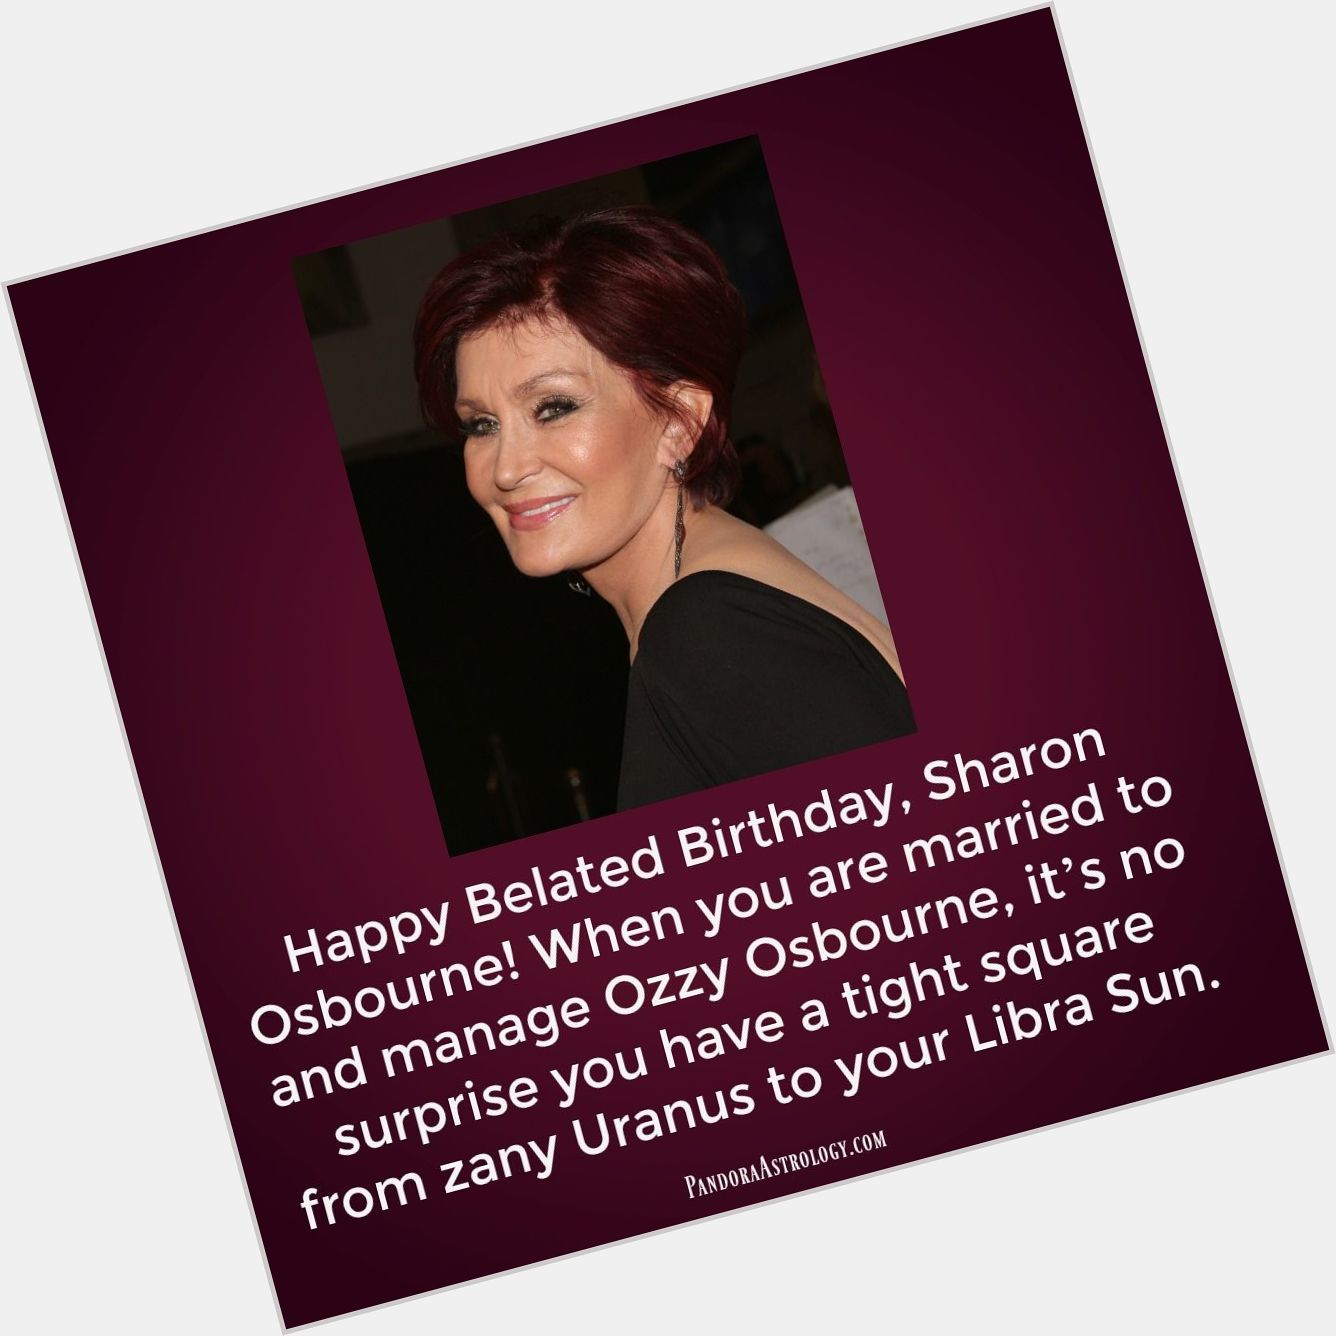 Happy Belated Birthday, Sharon Osbourne!  